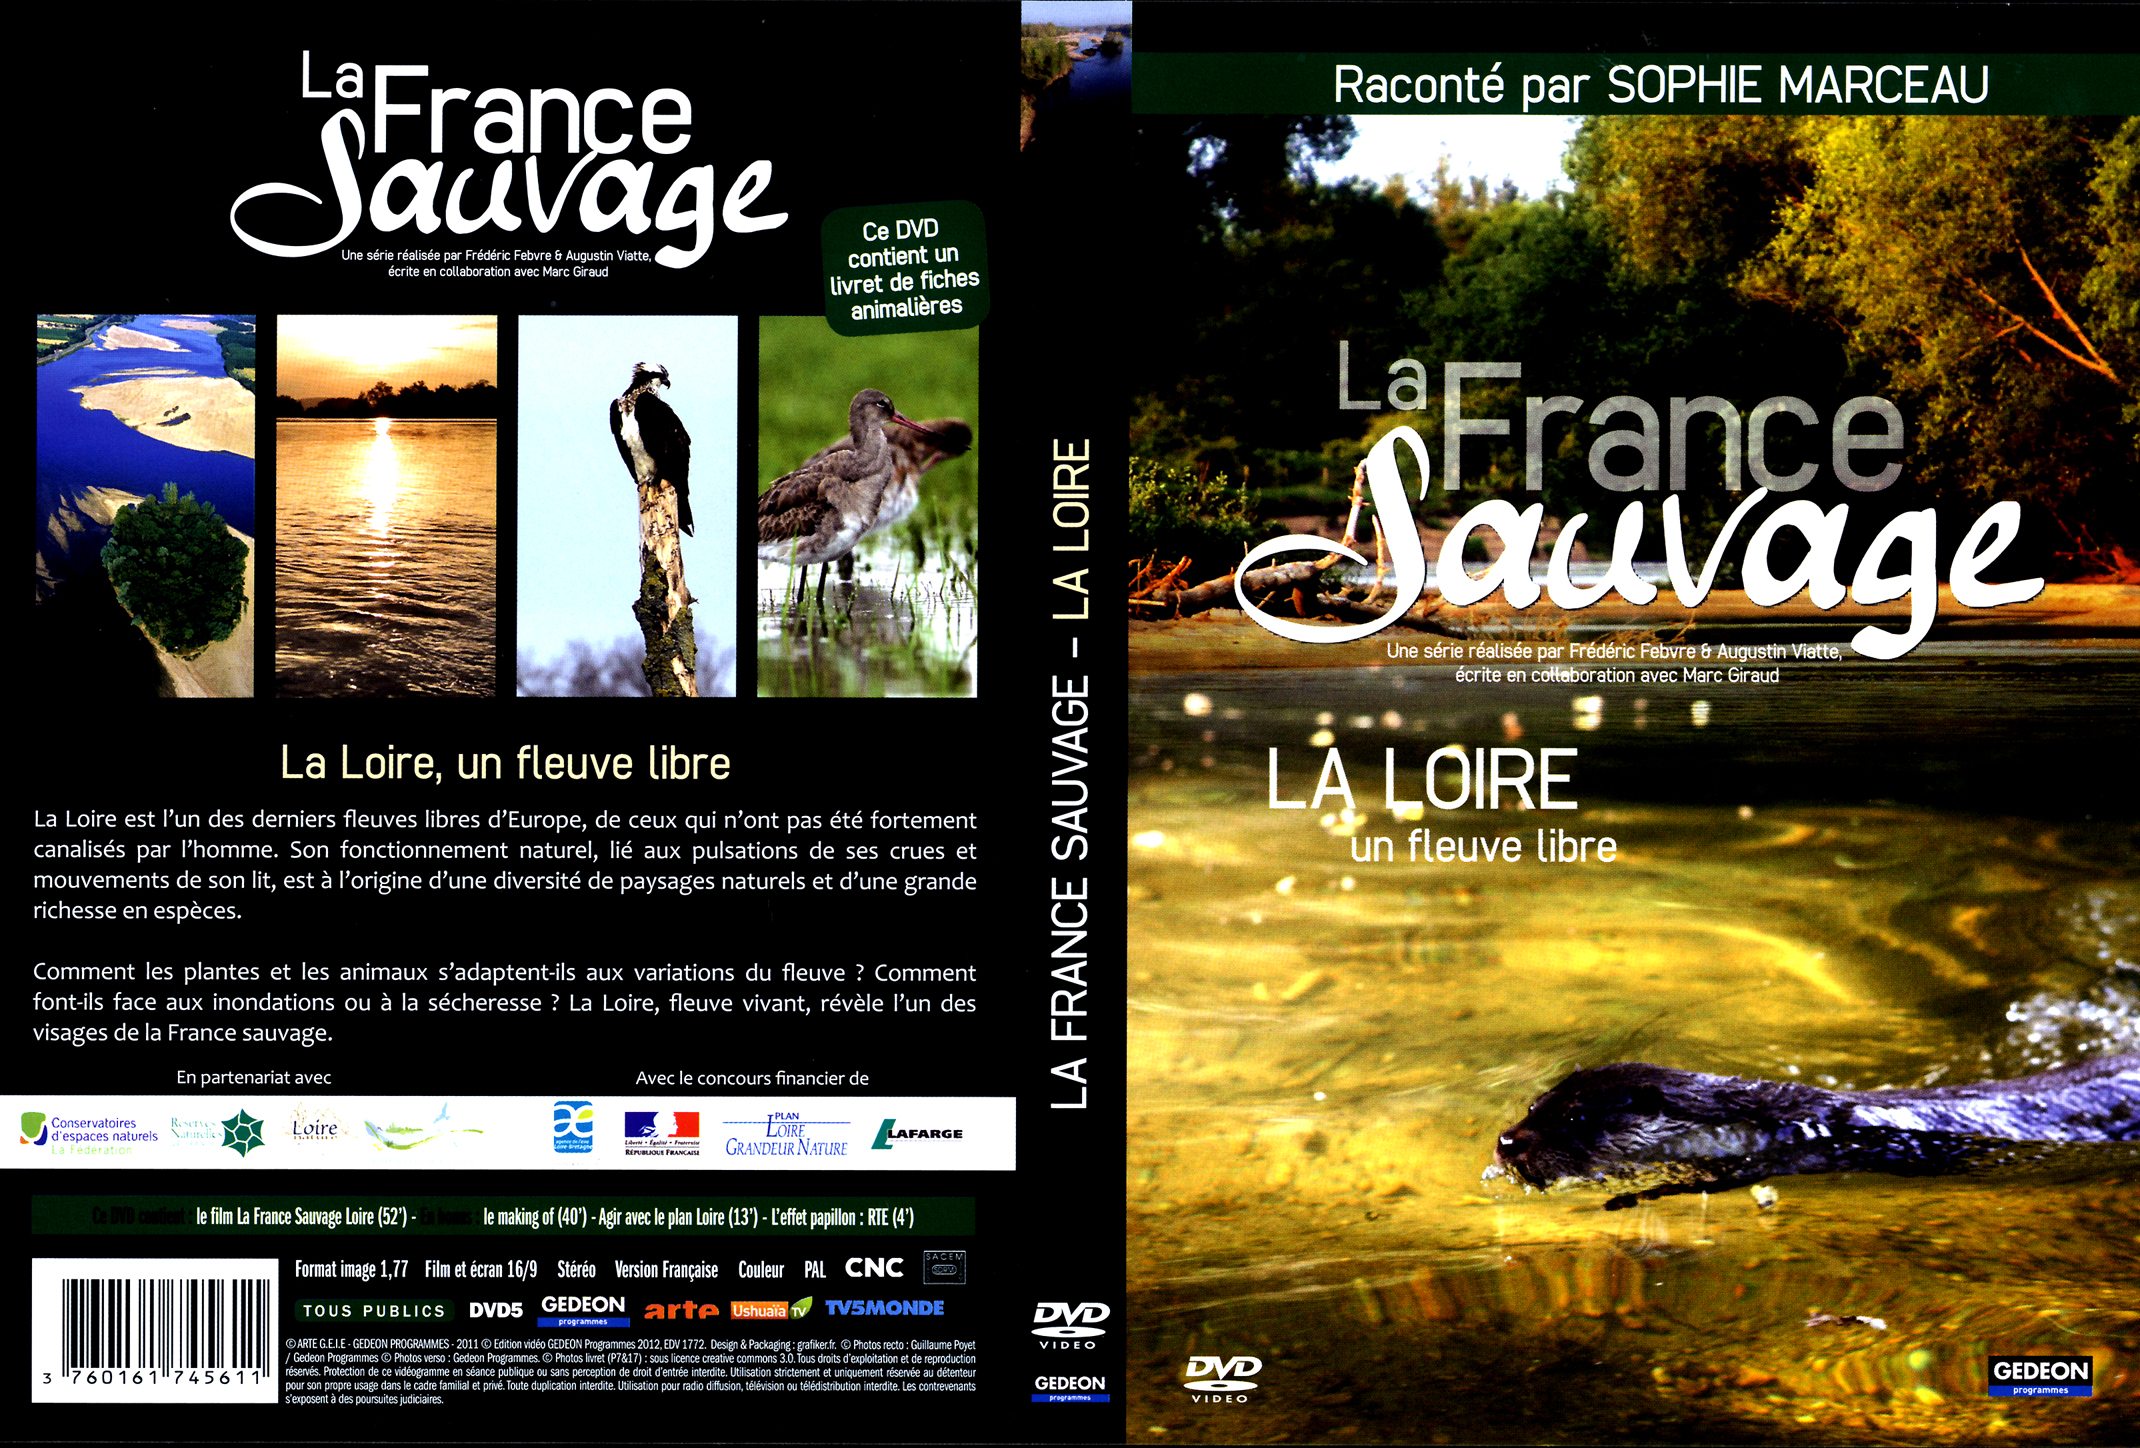 Jaquette DVD La France sauvage La Loire